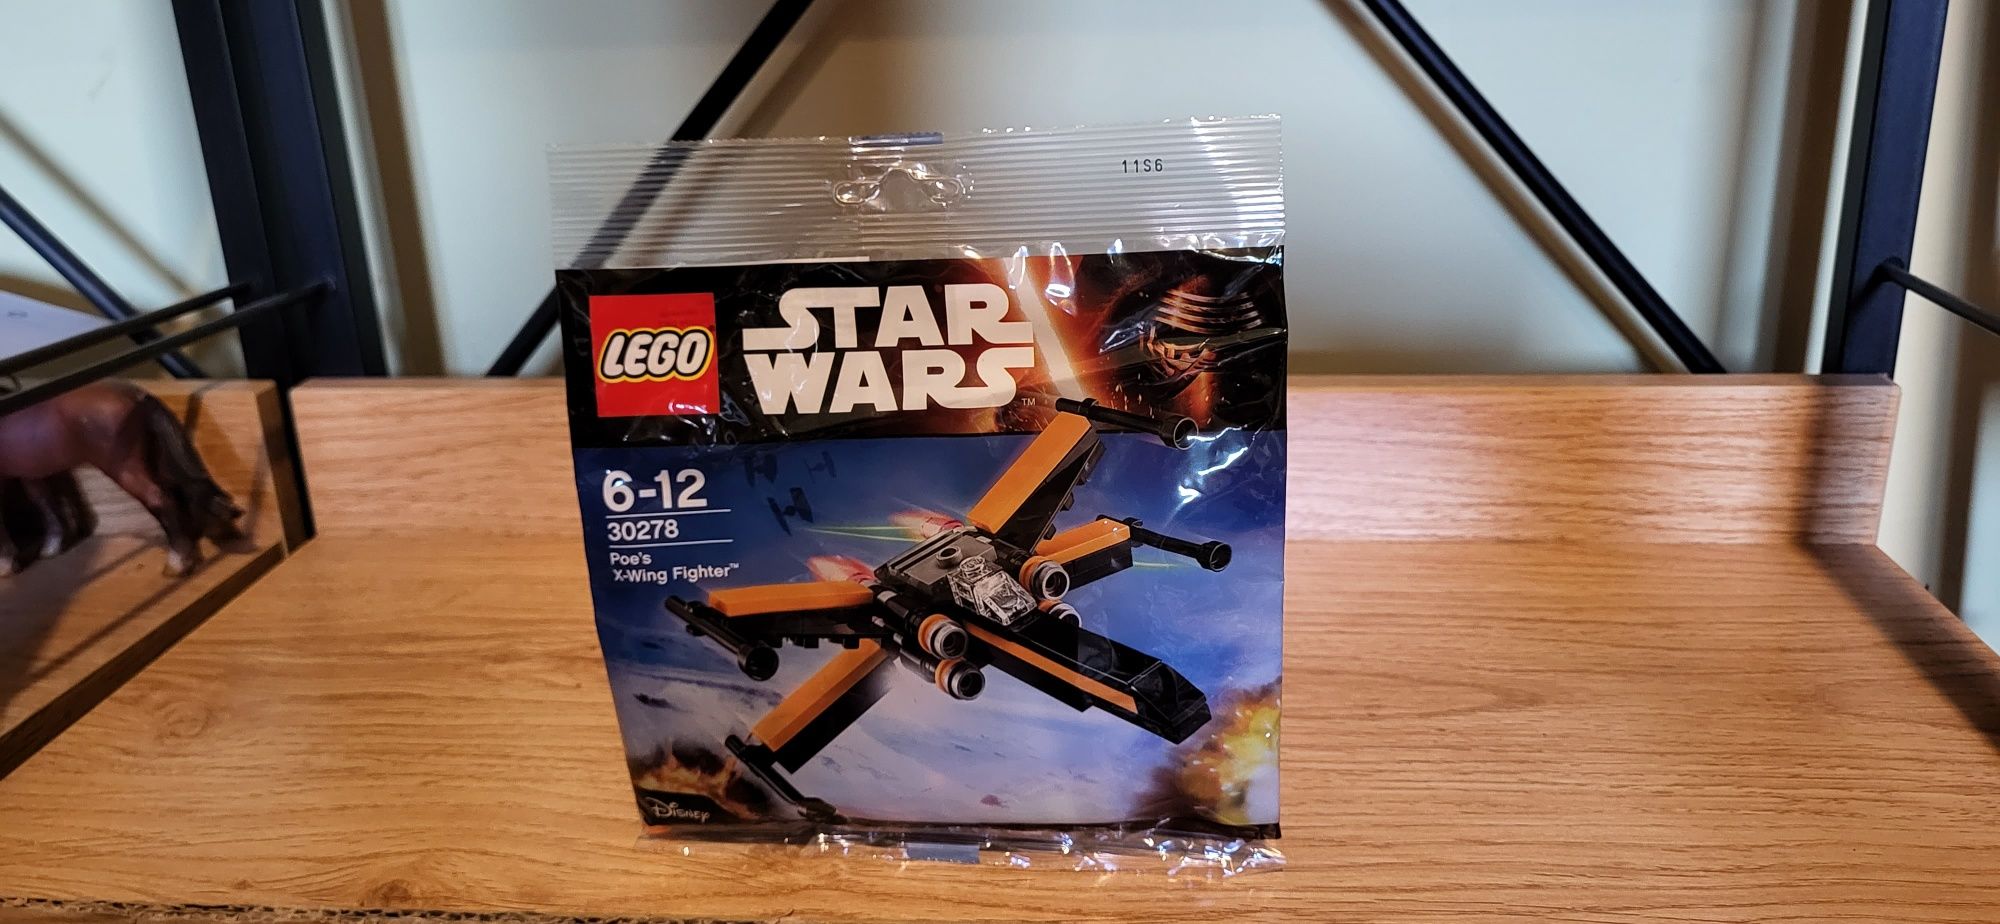 Lego Star Wars 30278 Poe's X-Wing Fighter saszetka z klockami